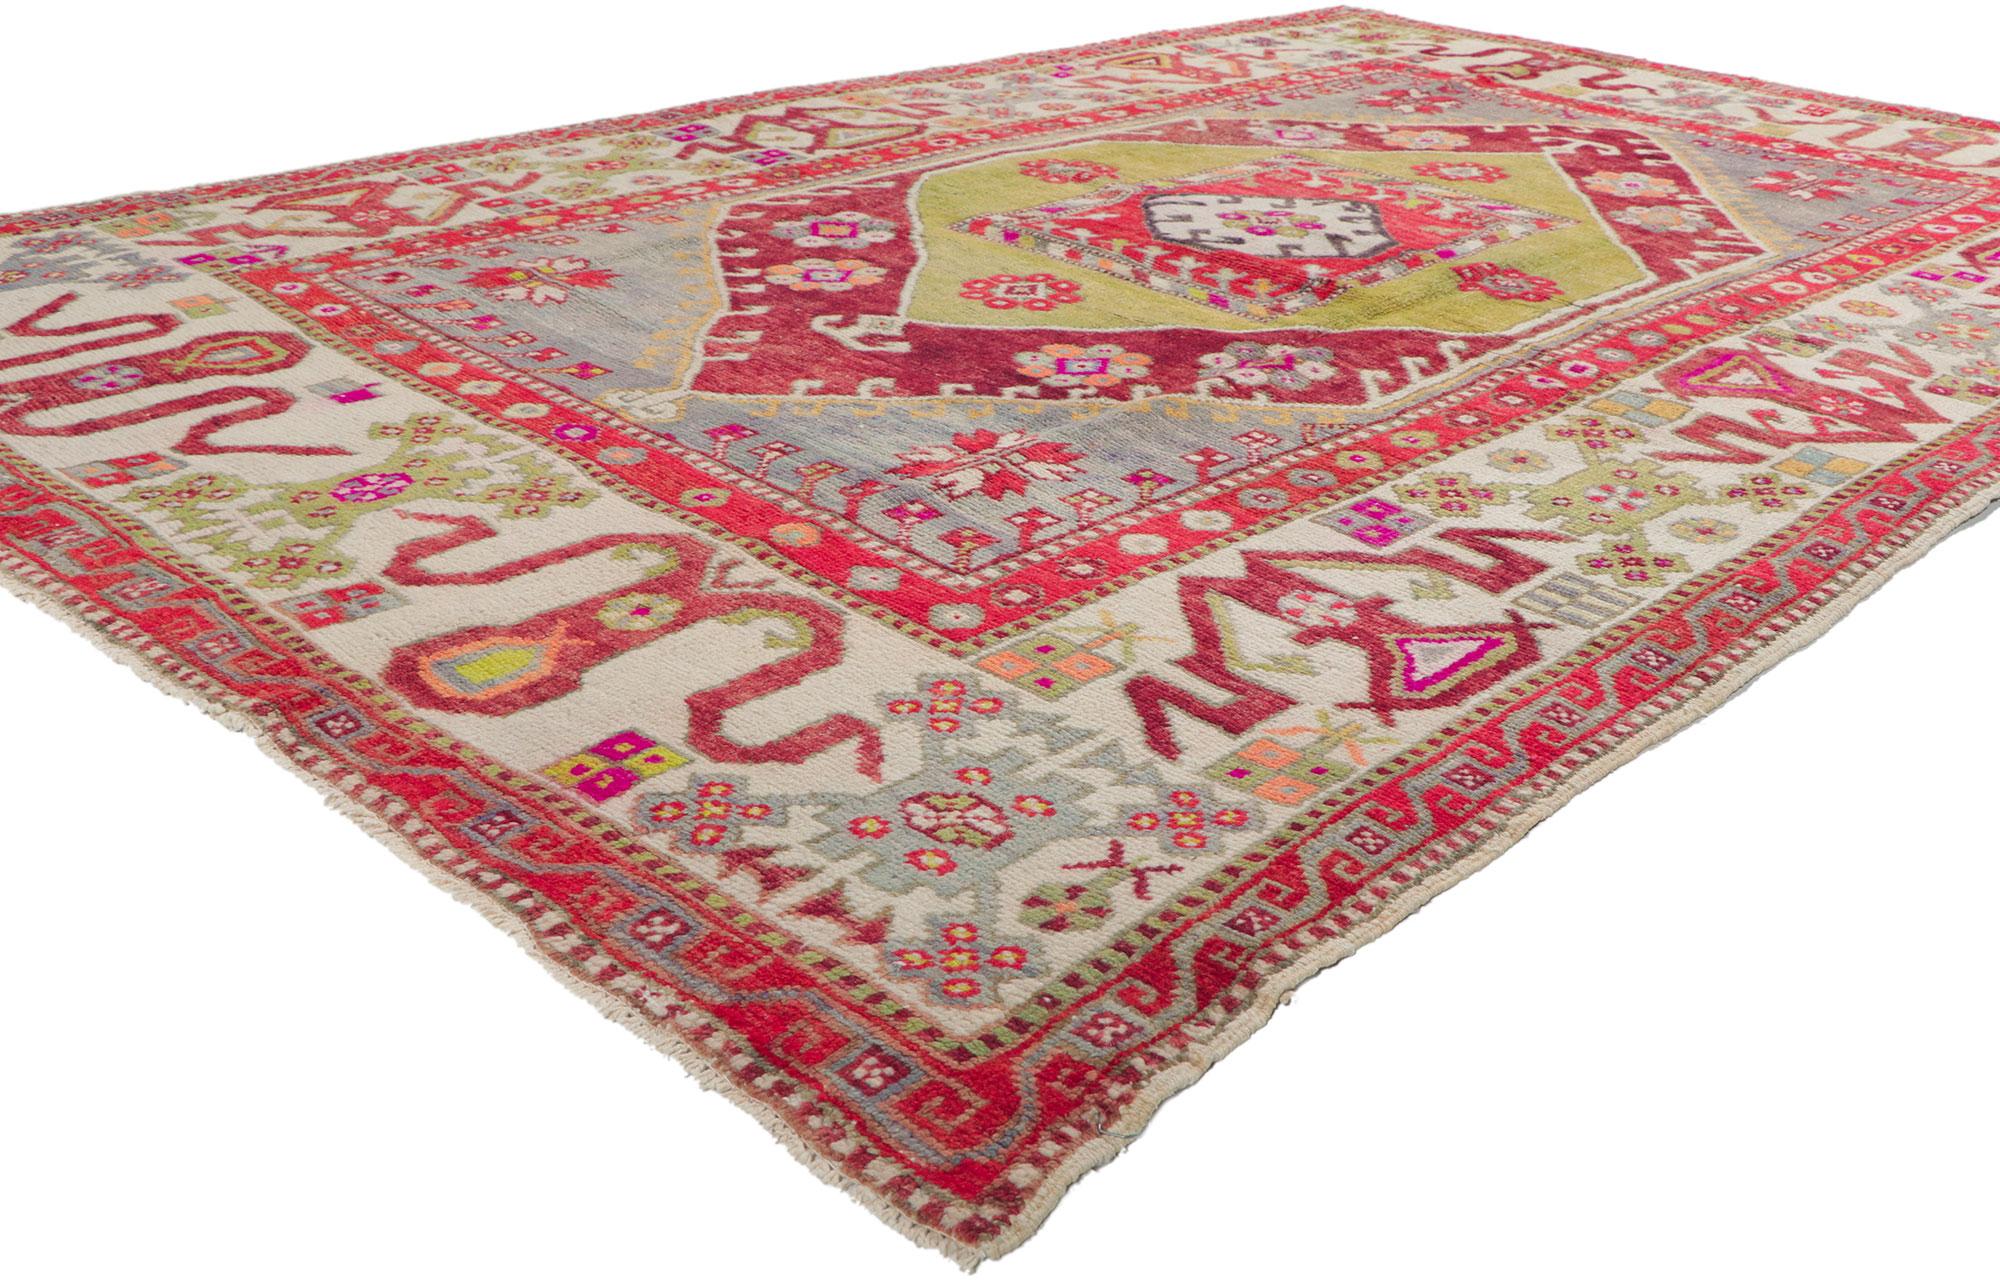 51784 Tapis Oushak turc vintage, 05'10 x 08'11.
Ce tapis Oushak turc vintage en laine tricotée à la main présente un design expressif et audacieux, ainsi que des détails et une texture incroyables. Il s'agit d'une vision captivante de la beauté du